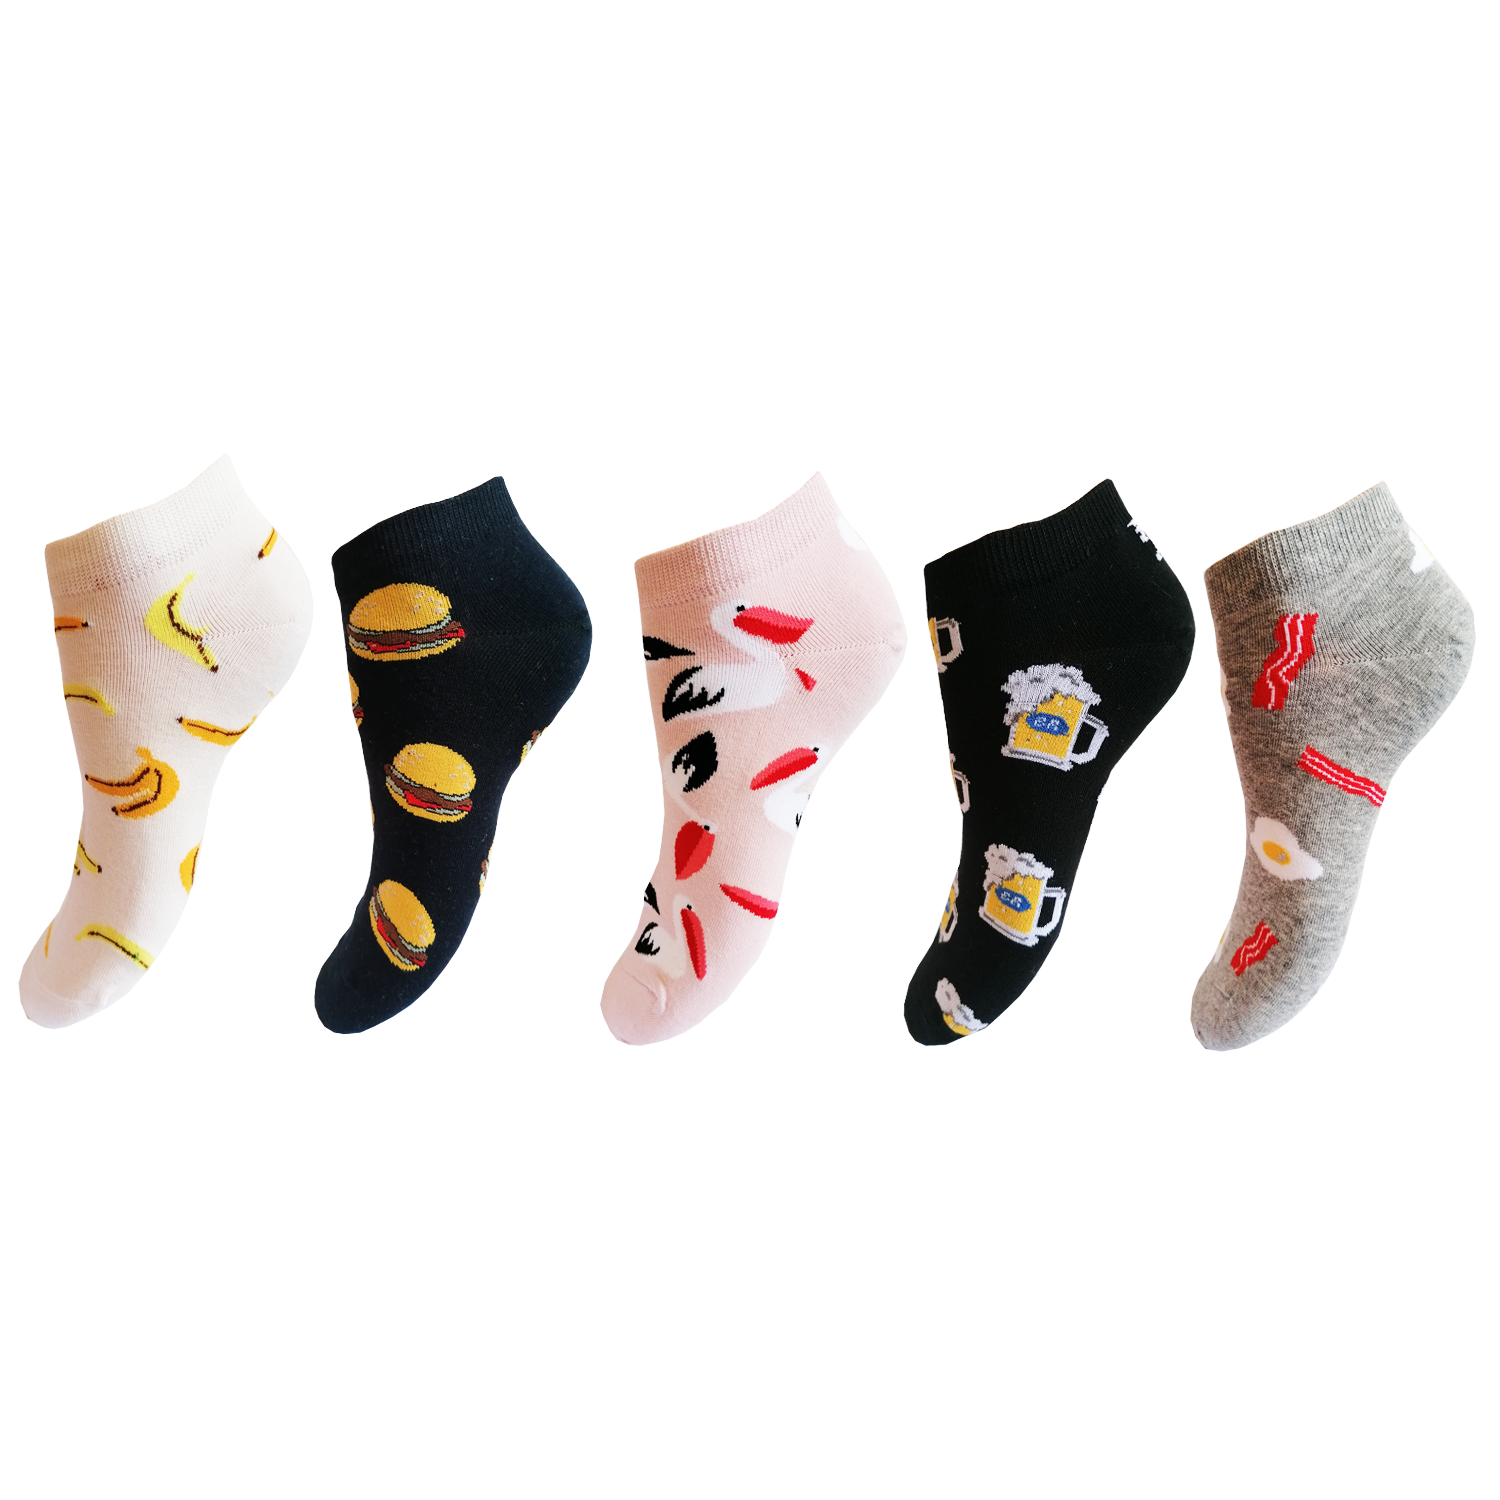 Dámské kotníkové ponožky Aura.Via - NDC5921, mix barev Barva: Mix barev, Velikost: 38-41